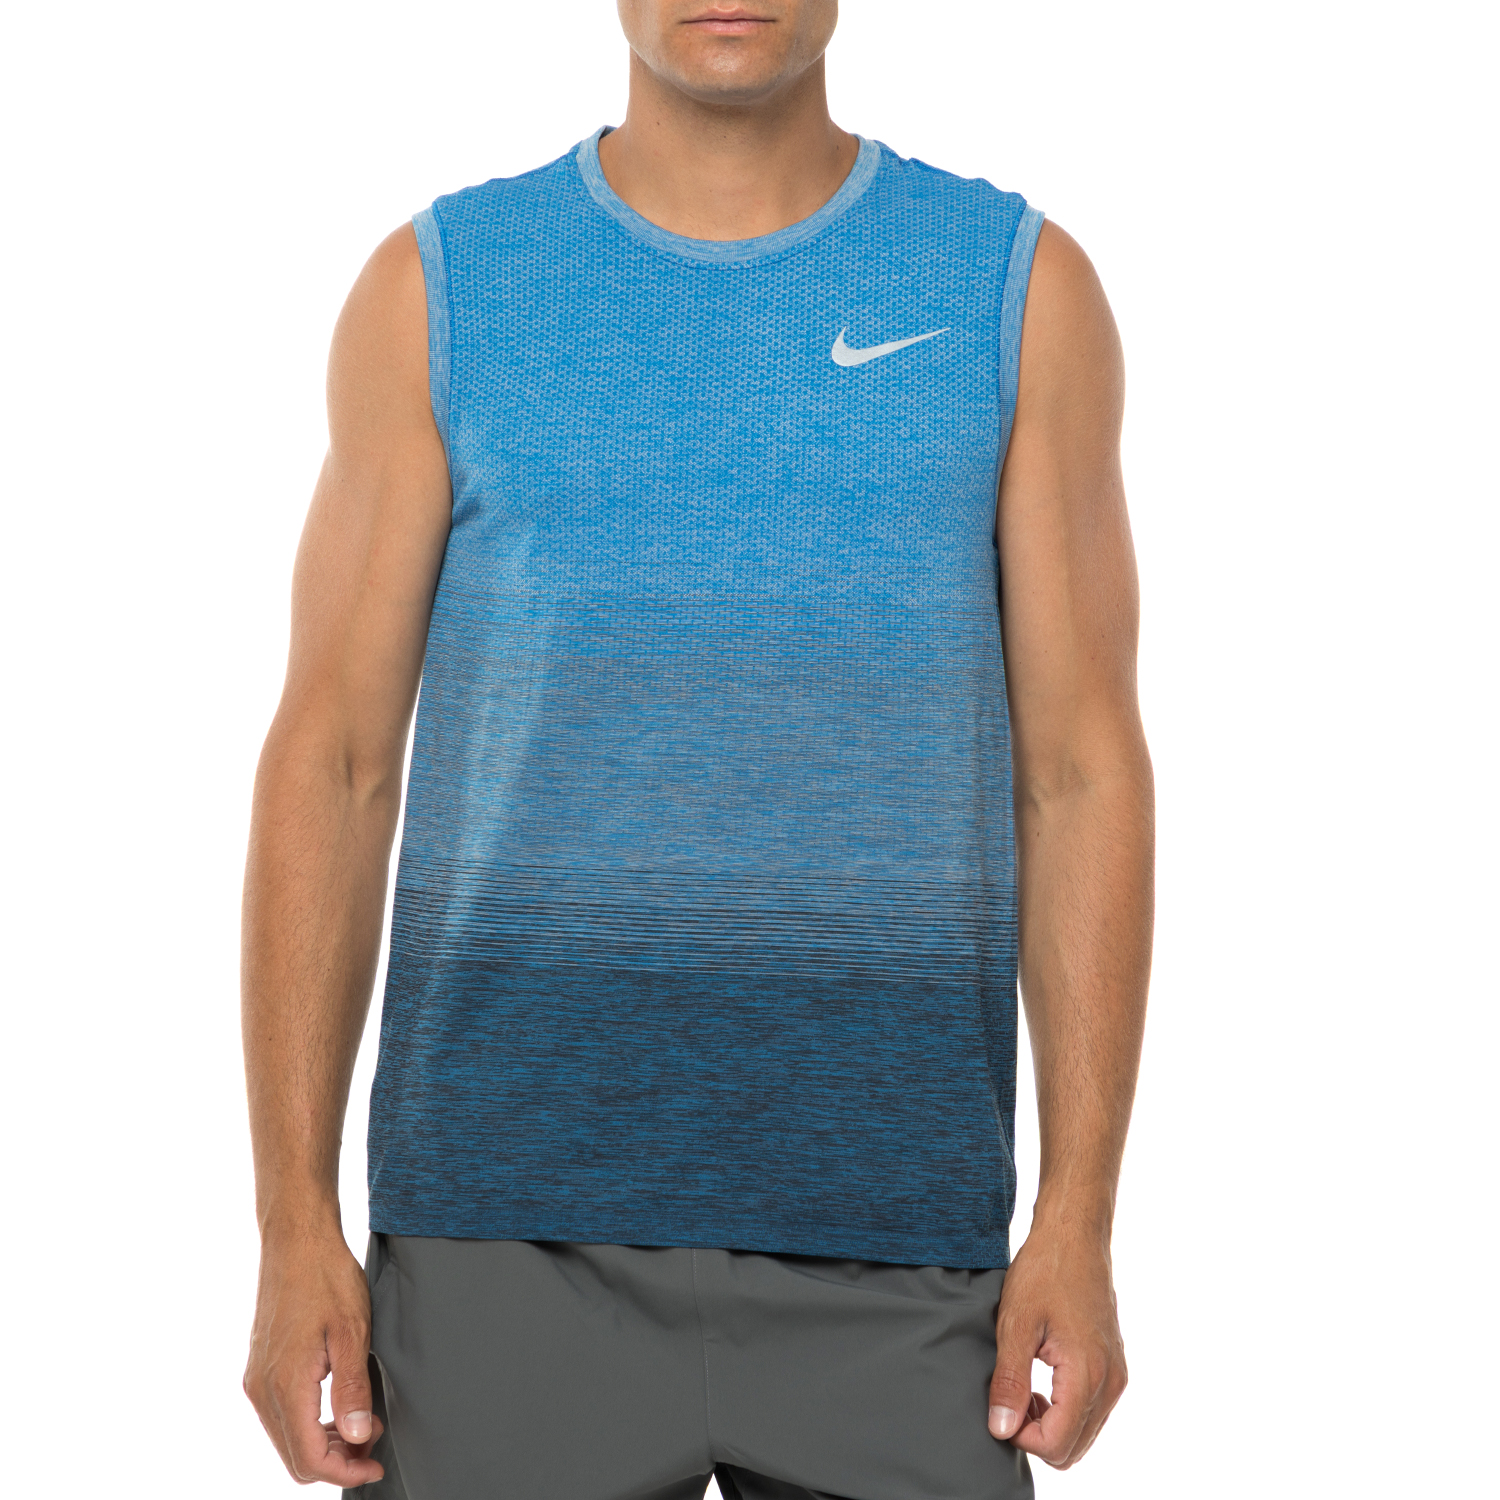 Ανδρικά/Ρούχα/Μπλούζες/Αμάνικες NIKE - Ανδρική αθλητική αμάνικη μπλούζα NIKE DF KNIT TOP SL μπλε